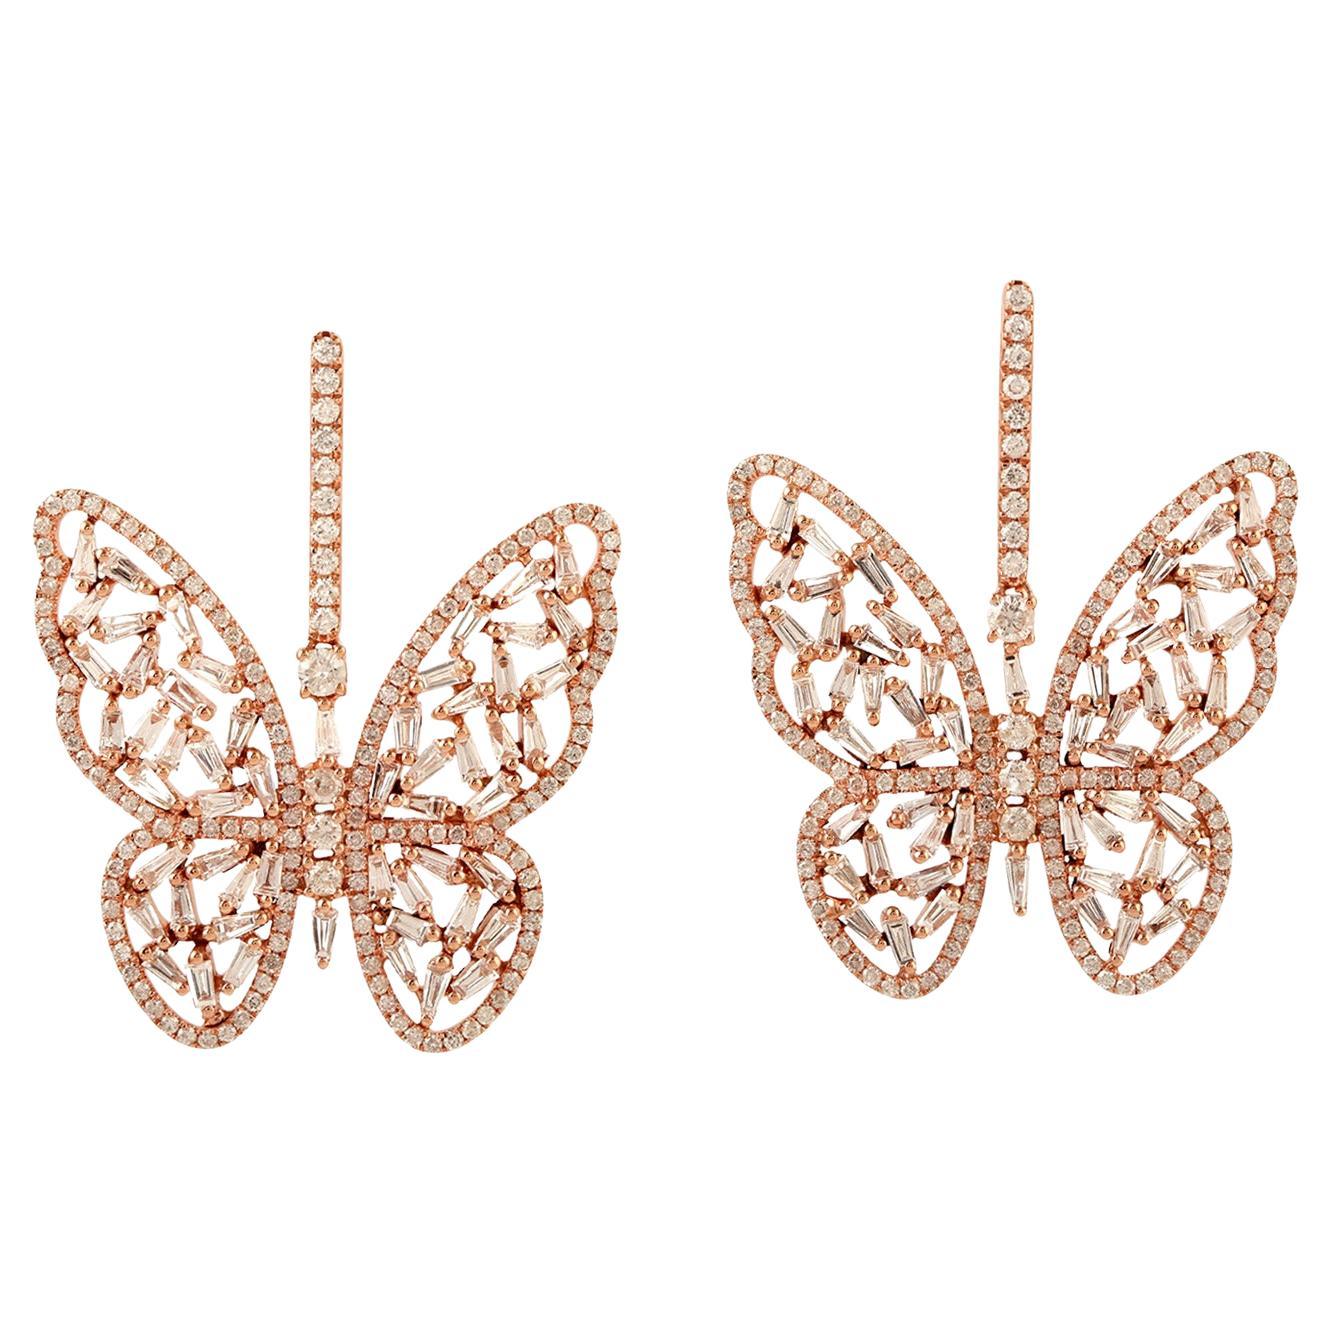 Butterfly Shaped 18k Gold Dangle Earrings Set in Diamonds For Sale